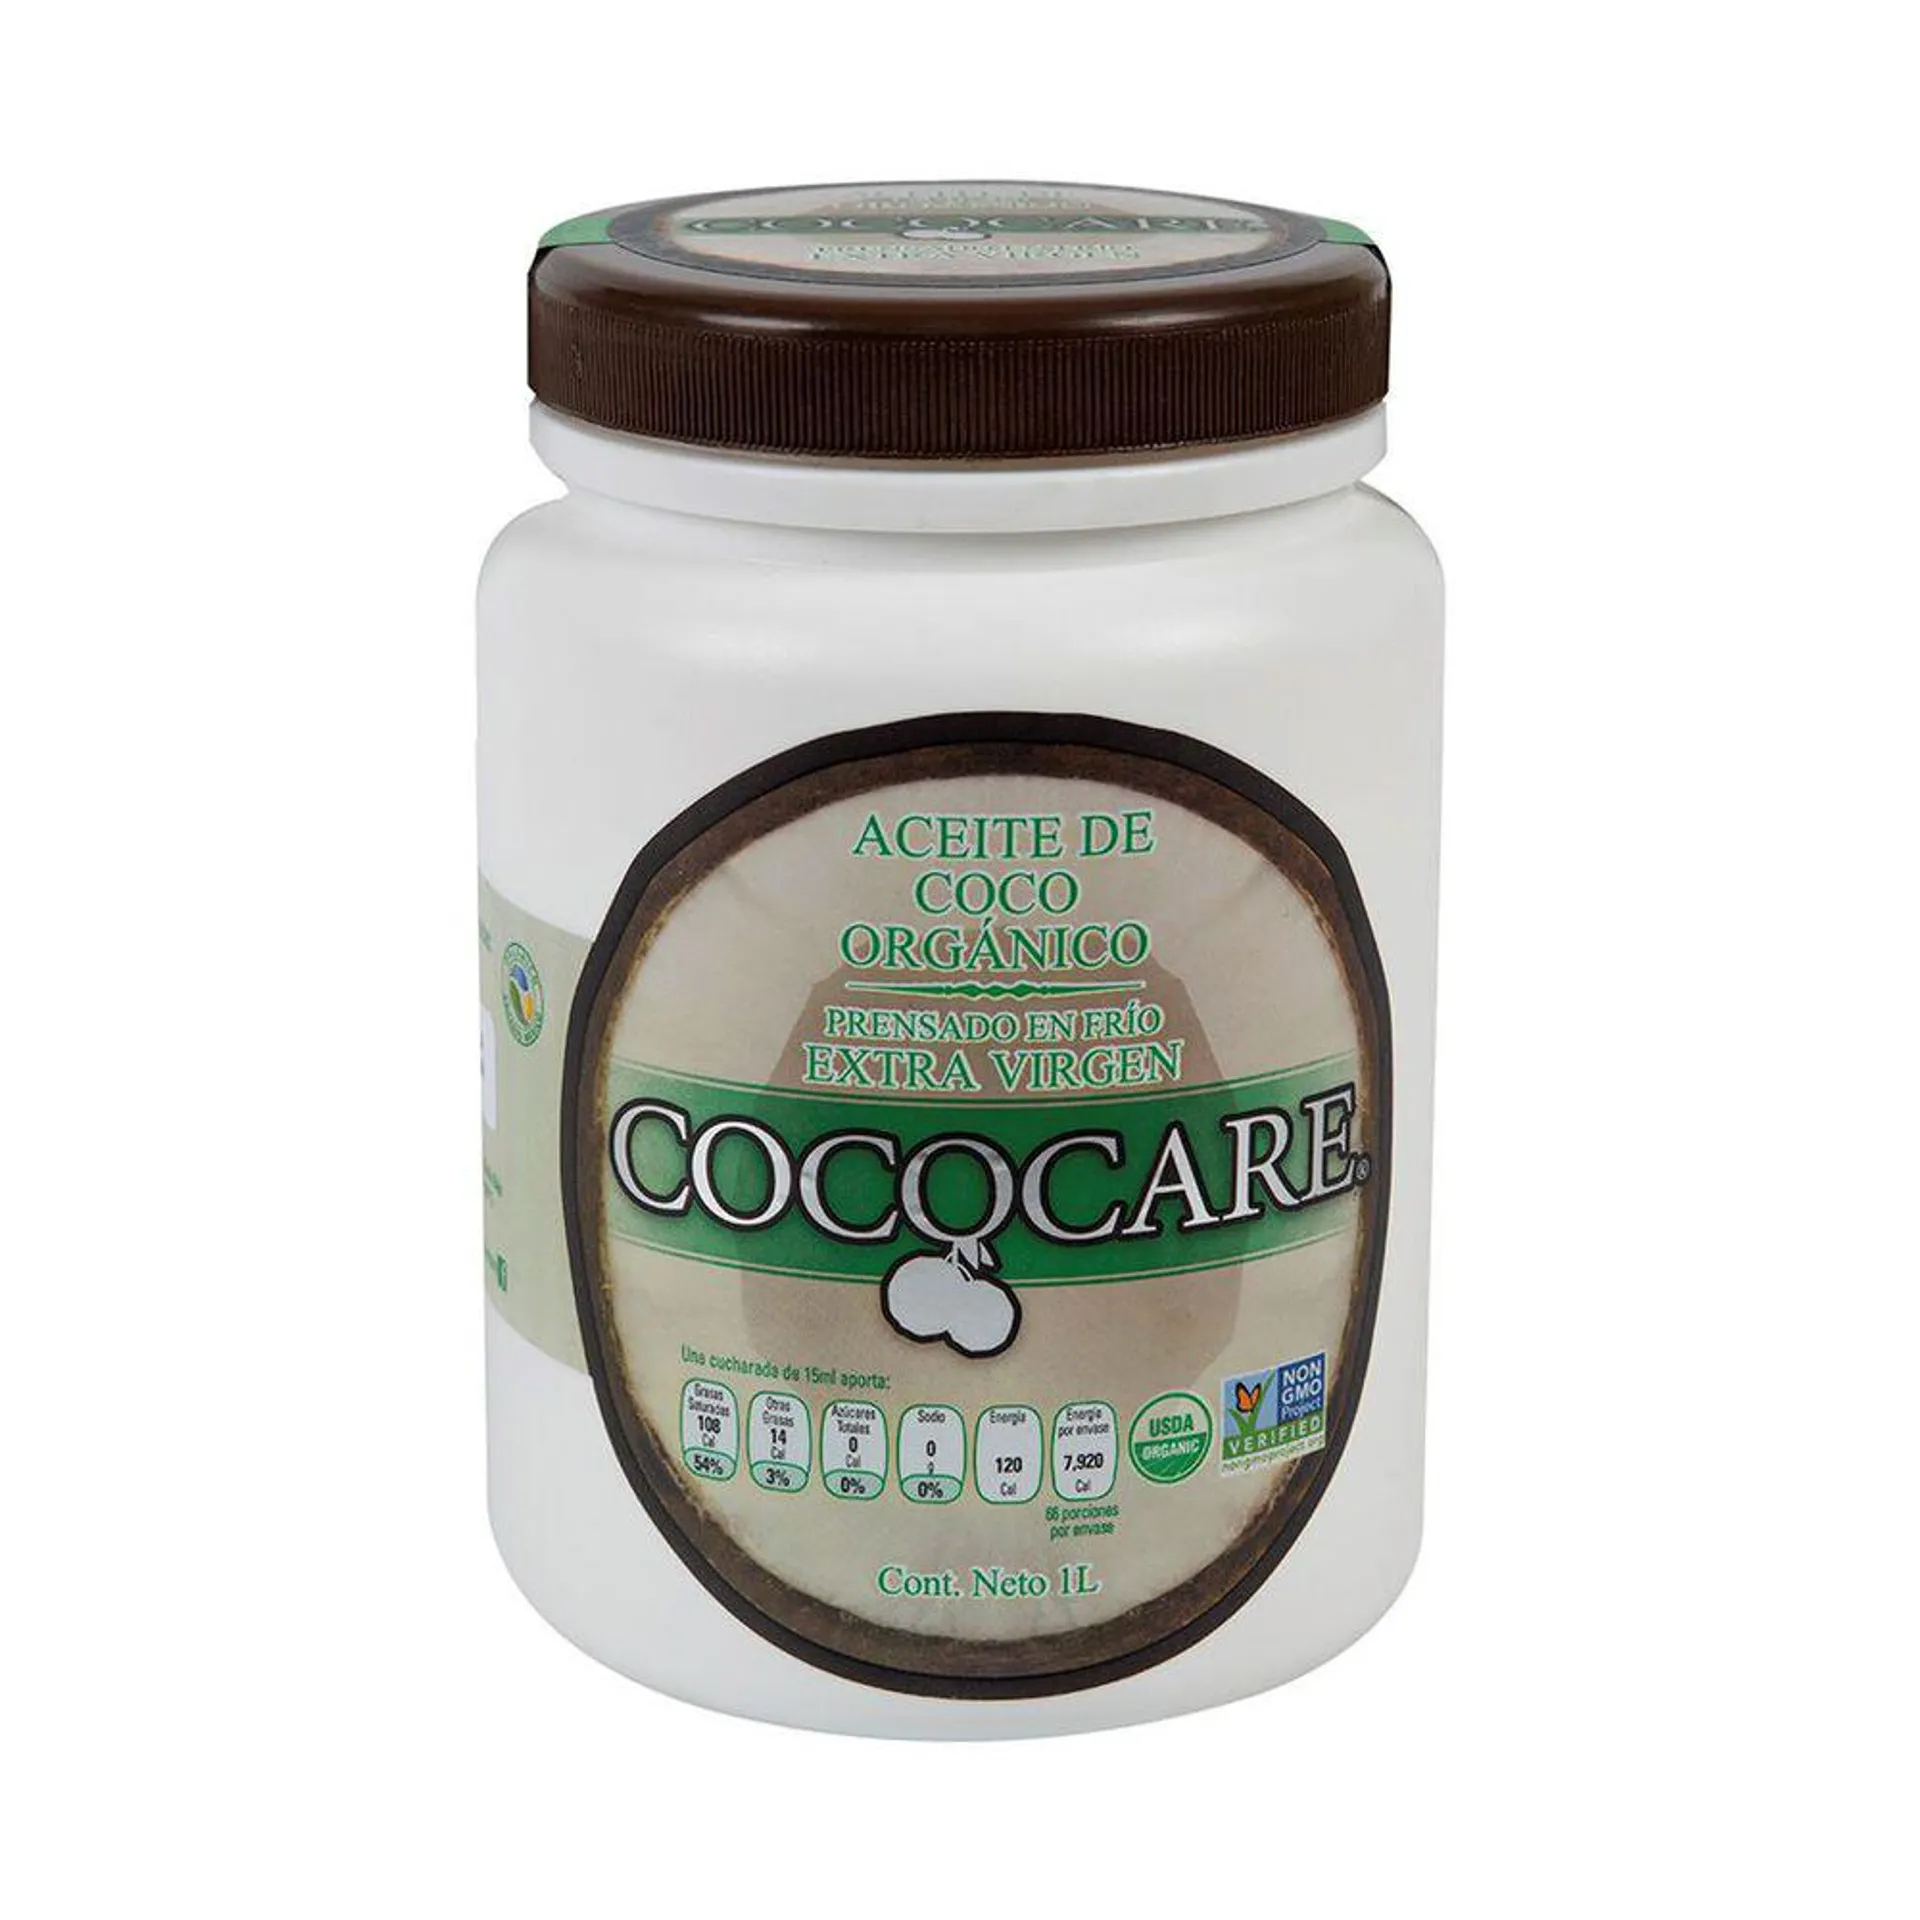 Aceite de Coco Cococare 1.66 L